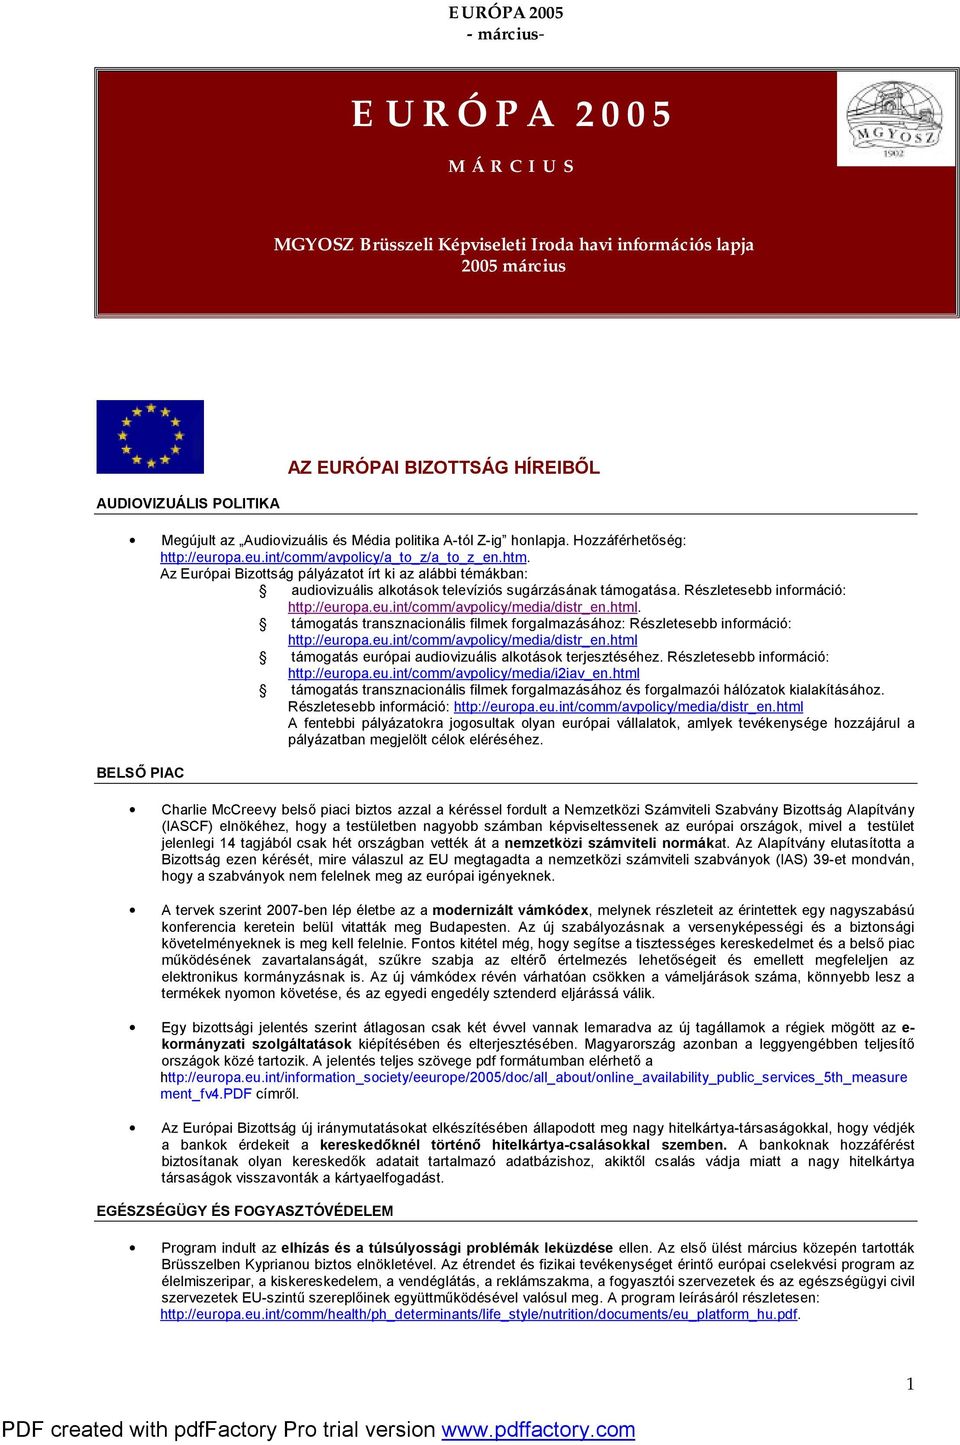 Az Európai Bizottság pályázatot írt ki az alábbi témákban: audiovizuális alkotások televíziós sugárzásának támogatása. Részletesebb információ: http://europa.eu.int/comm/avpolicy/media/distr_en.html.